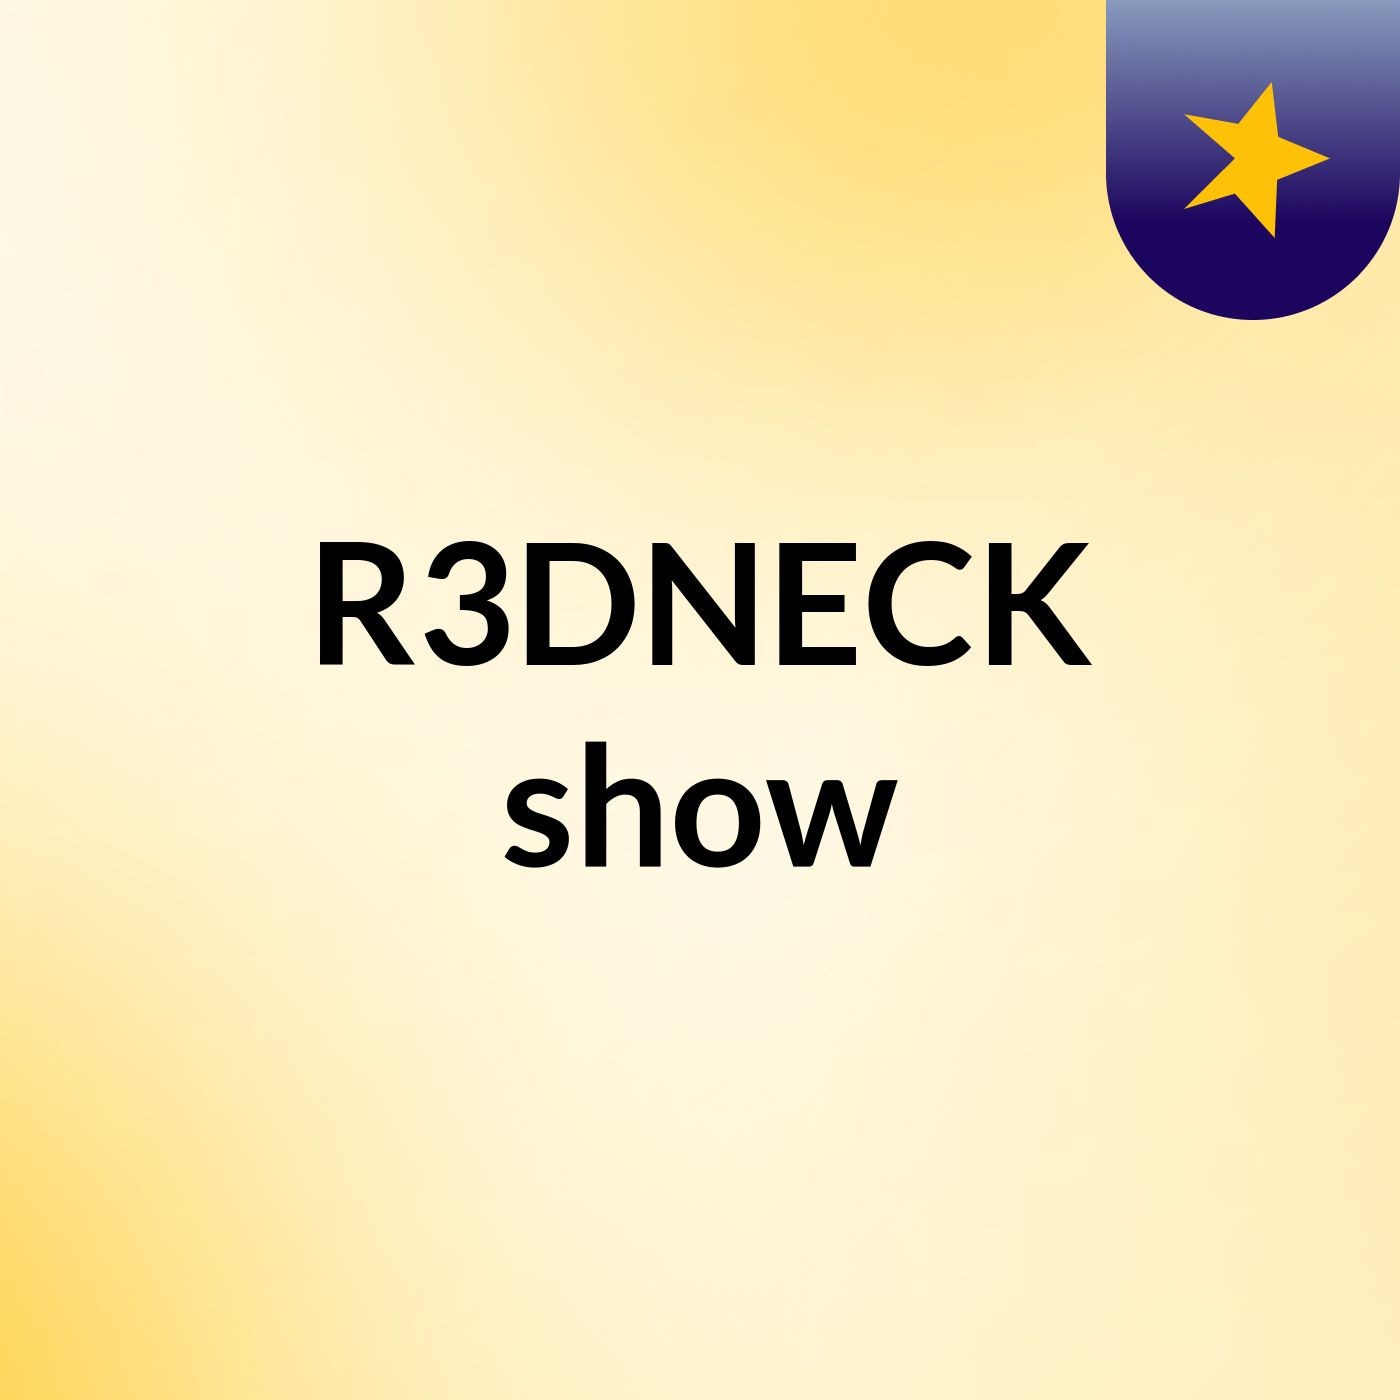 R3DNECK show